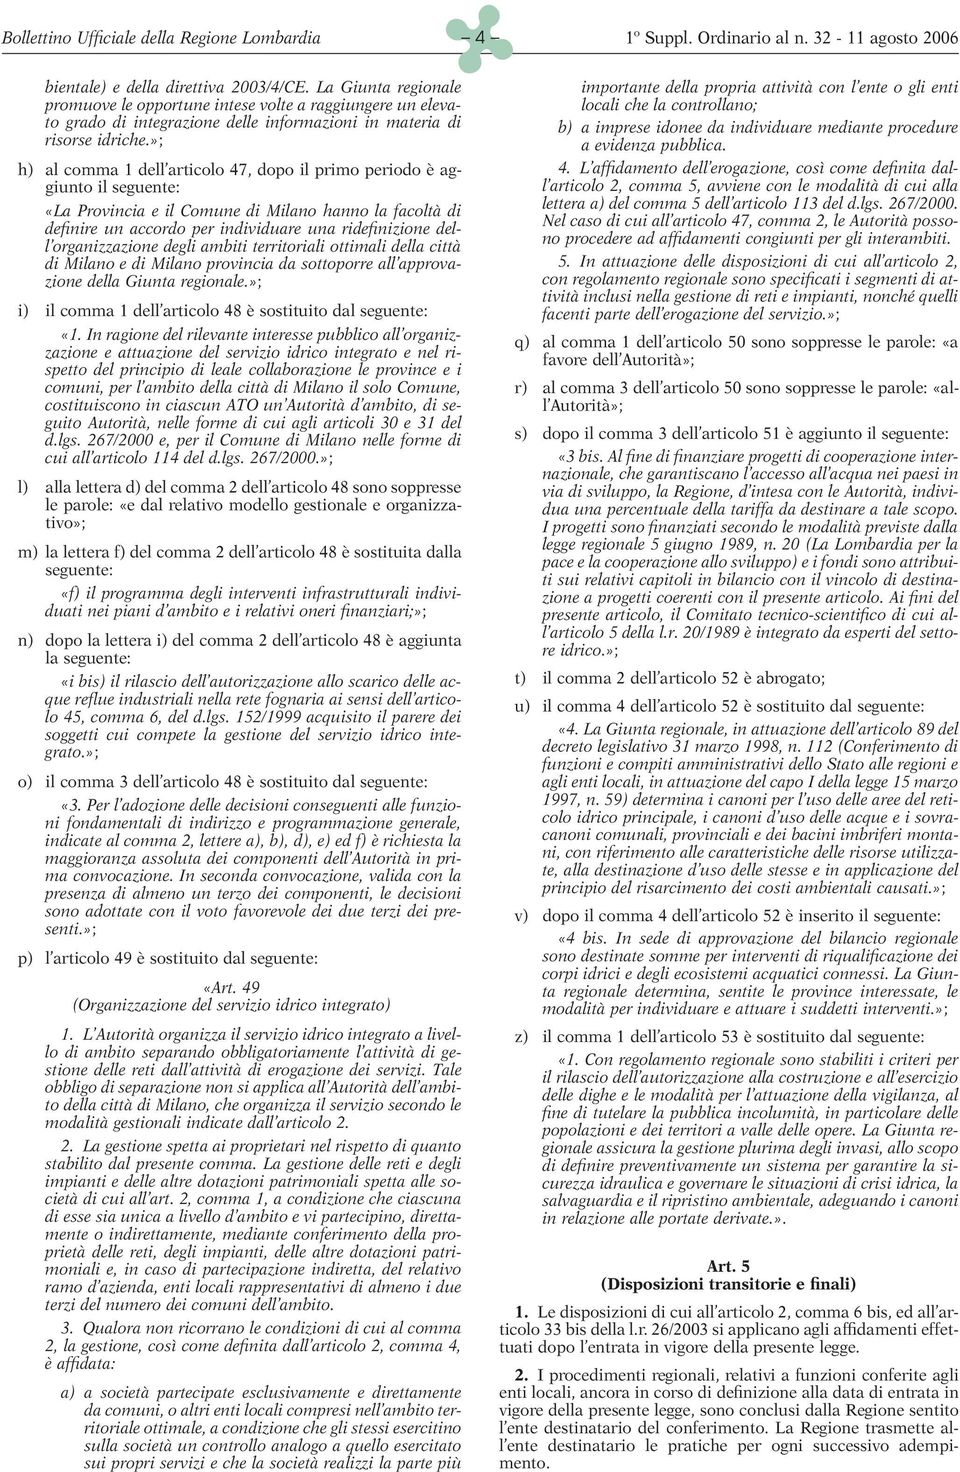 »; h) al comma 1 dell articolo 47, dopo il primo periodo è aggiunto il seguente: «La Provincia e il Comune di Milano hanno la facoltà di definire un accordo per individuare una ridefinizione dell